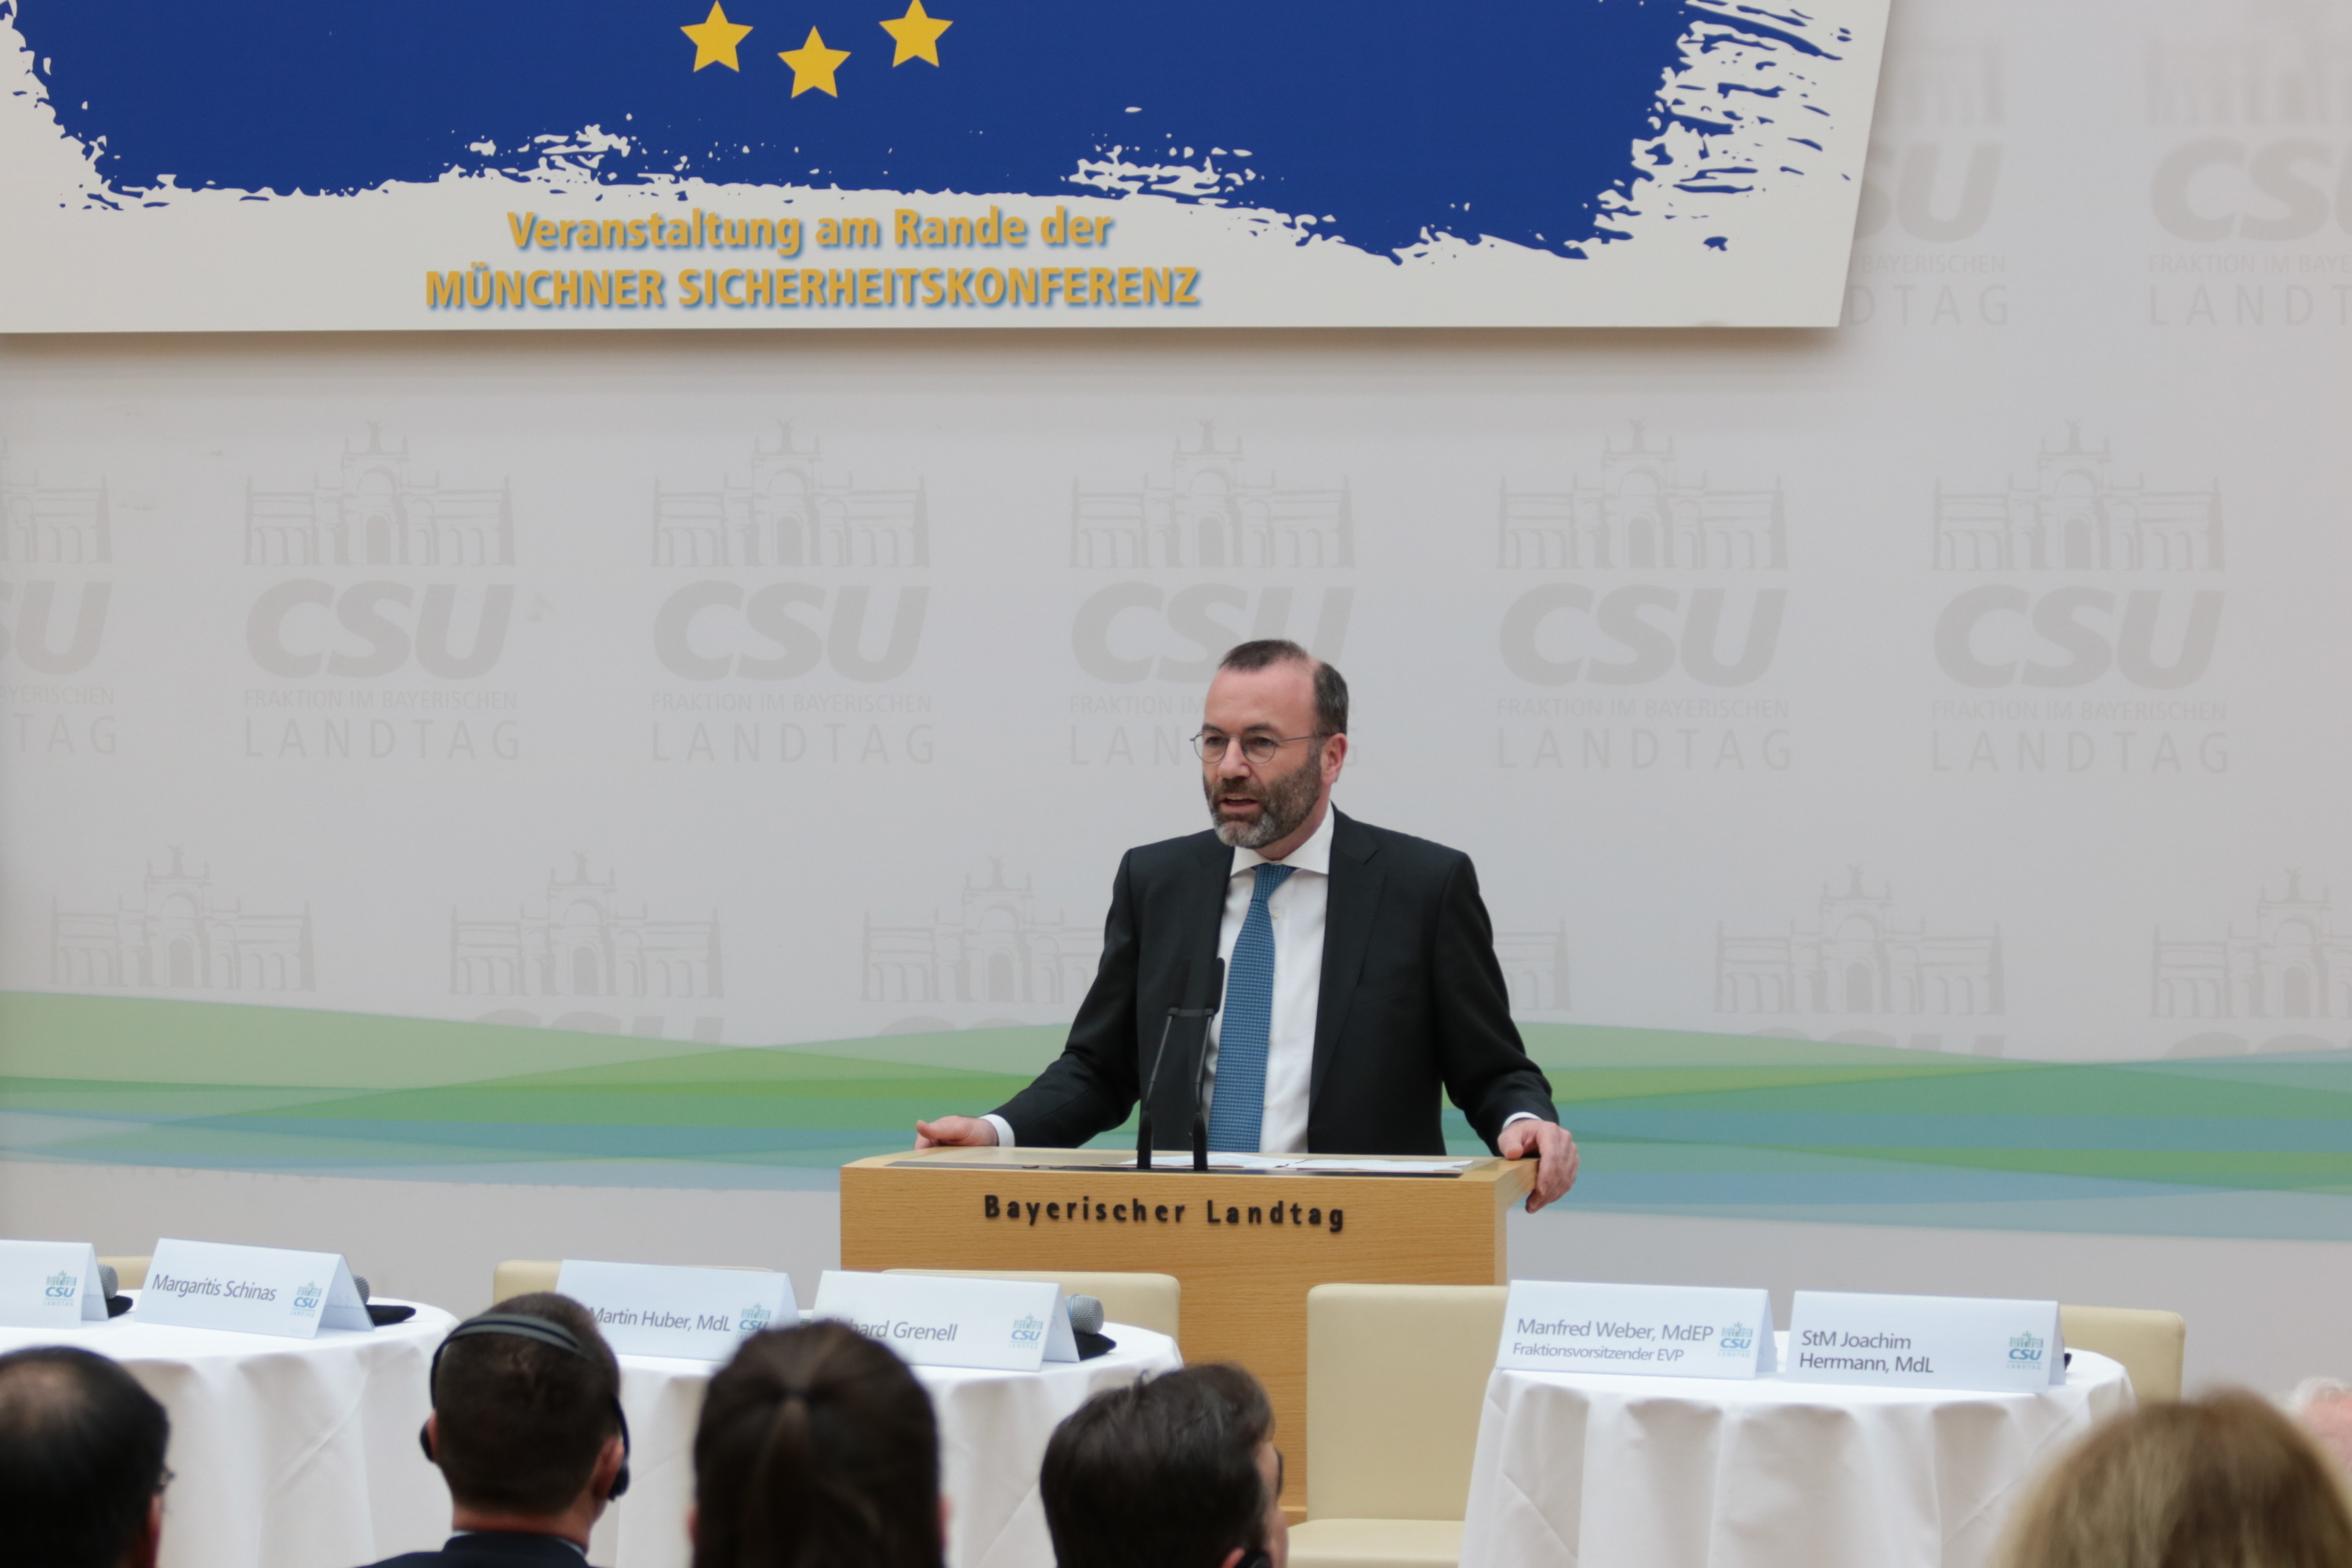 15.22.2024 - Wie viel Sicherheit braucht Europa? Veranstaltung am Rande der Münchner Sicherheitskonferenz 2020 - Manfred Weber, Vorsitzender der EVP-Frakion im Europäischen Parlament. (Foto: CSU-Fraktion) 